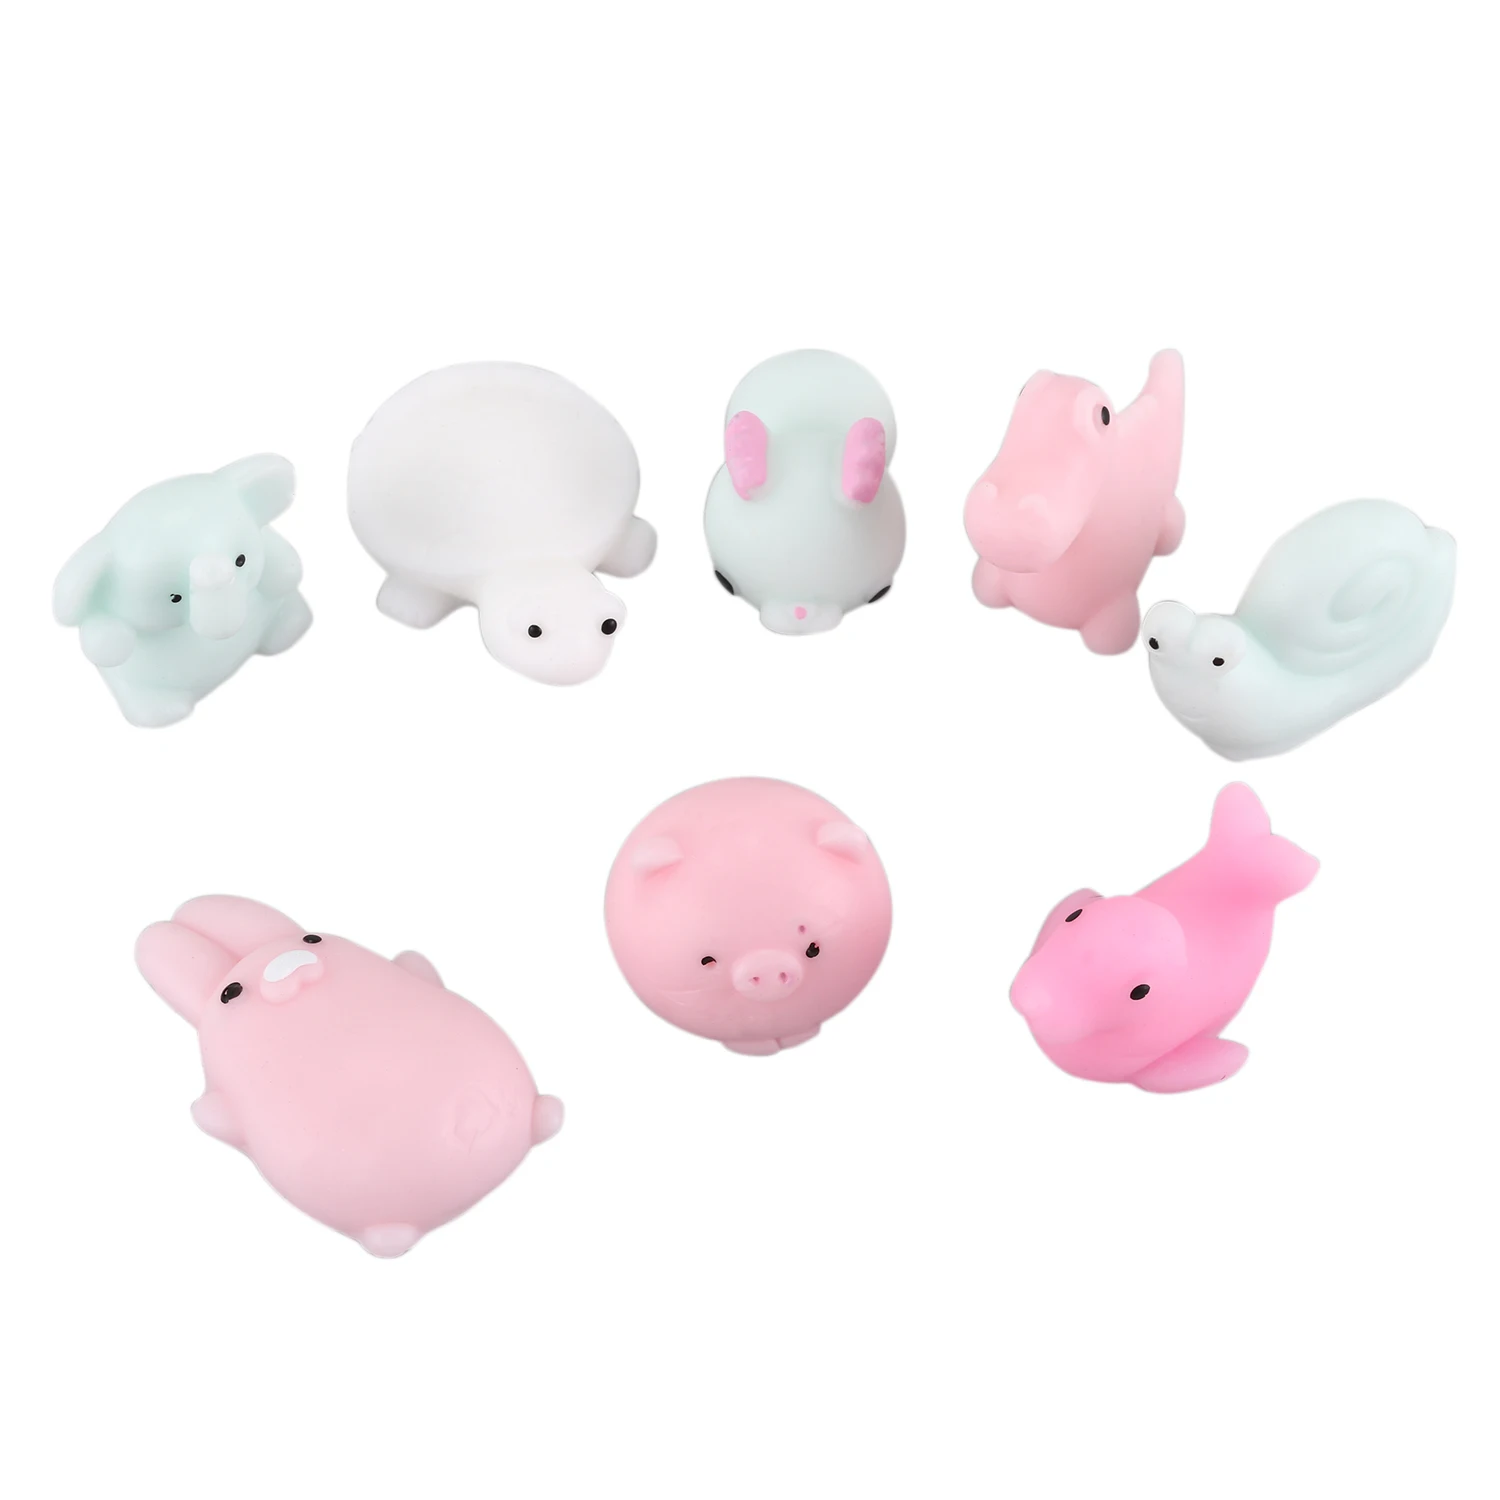 8 x милые животные Mochi Squishy, Kawaii mini мягкая squeeze Игрушка, Детские аксессуары ручной работы игрушки подарки, снятие стресса, decora